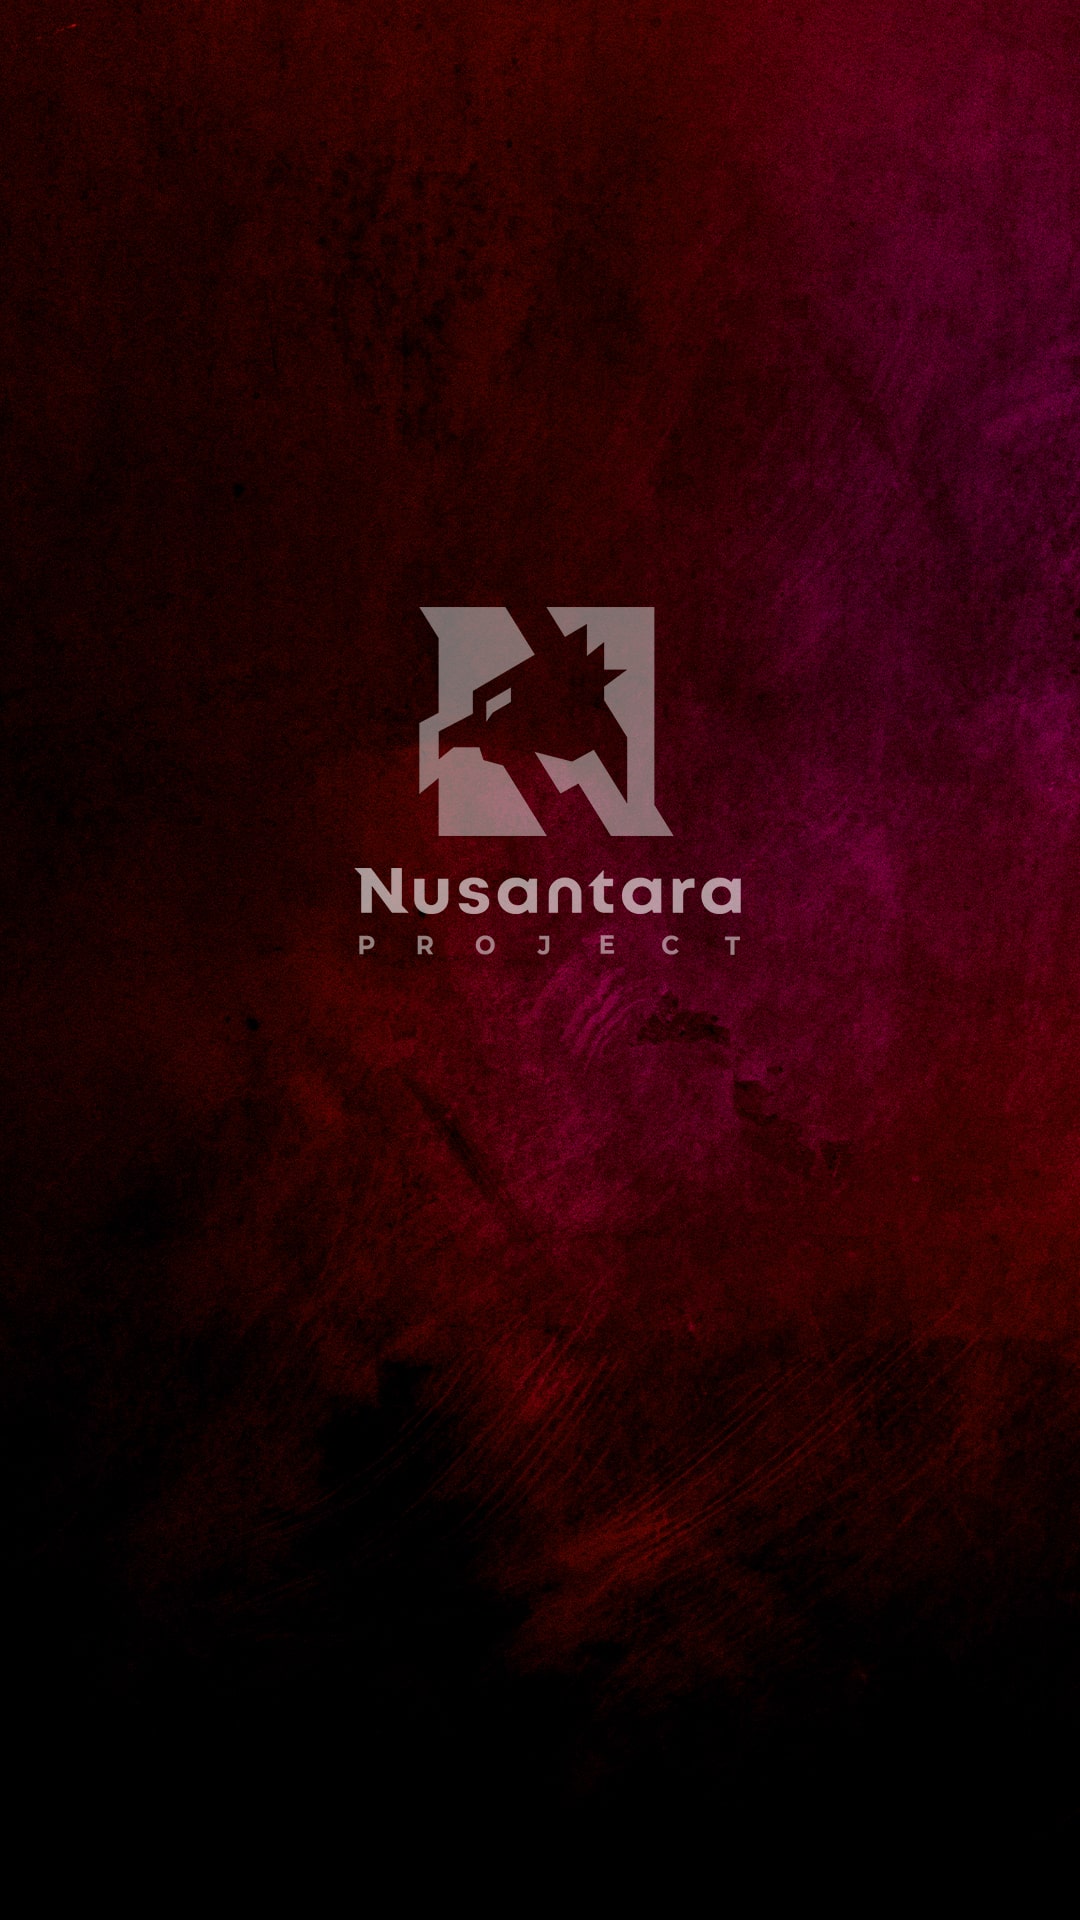 Wallpaper Nusantara Project Full HD